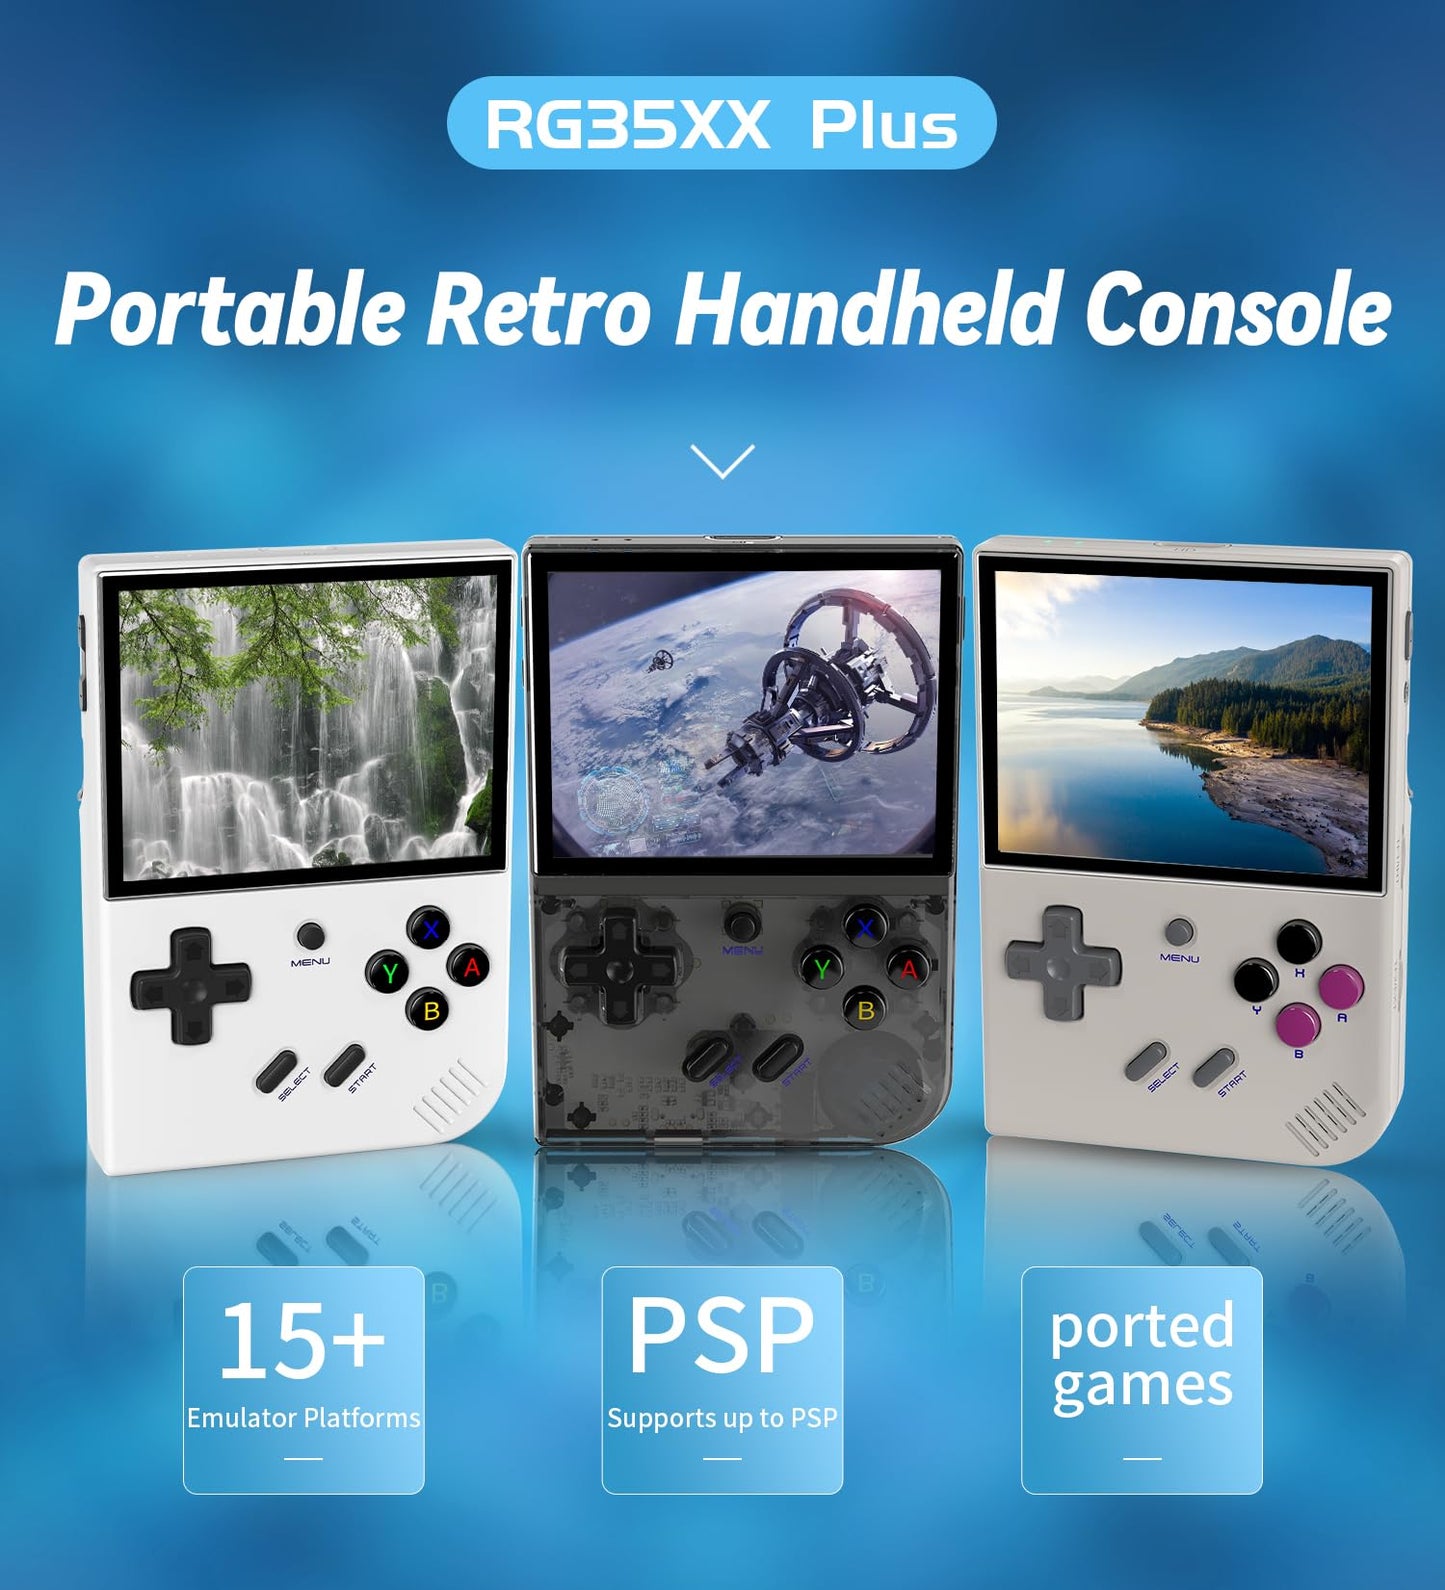 PRODUCTO 526 RG35XX Plus Linux Consola de juegos portátil Pantalla IPS de 3,5'', 35xx Plus con una tarjeta 64G 6900 juegos precargados, RG35XX Plus admite 5G WiFi Bluetooth HDMI y salida de TV Batería de 3300 mAh